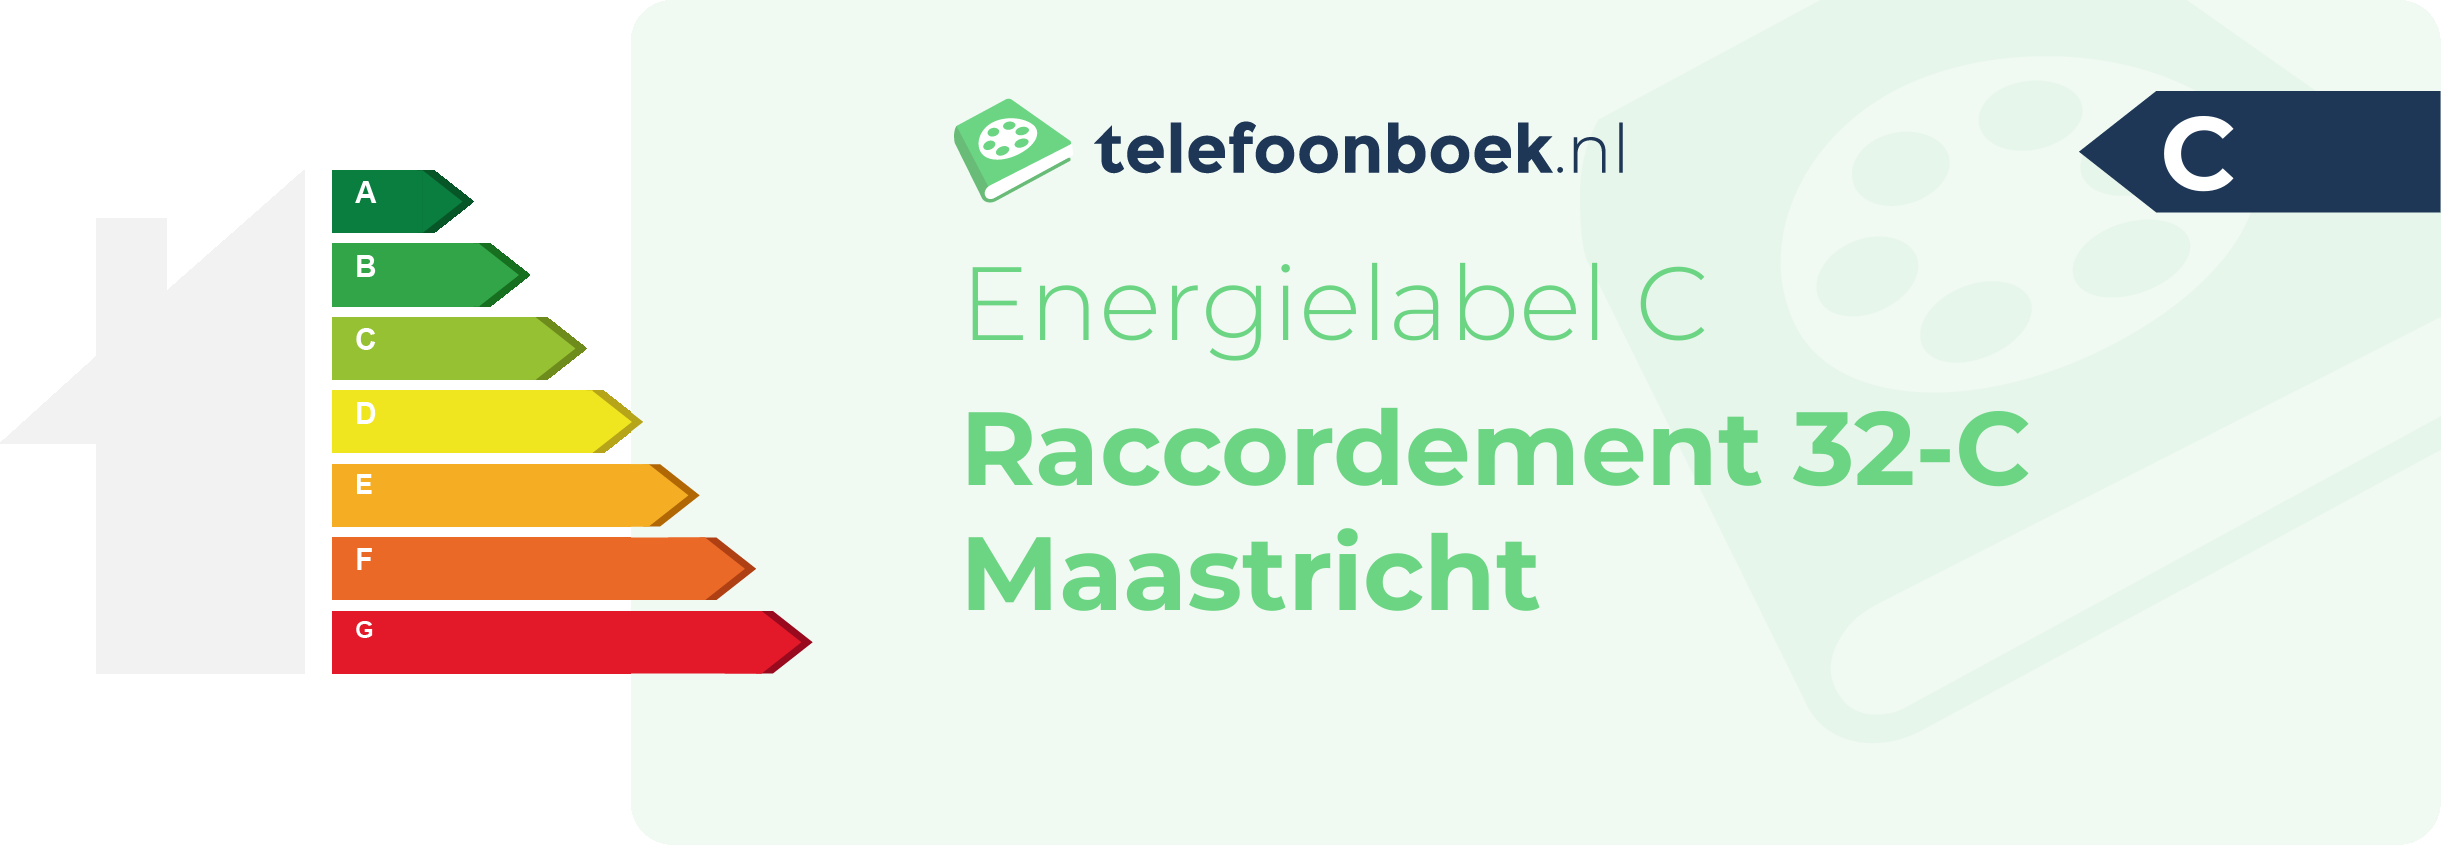 Energielabel Raccordement 32-C Maastricht